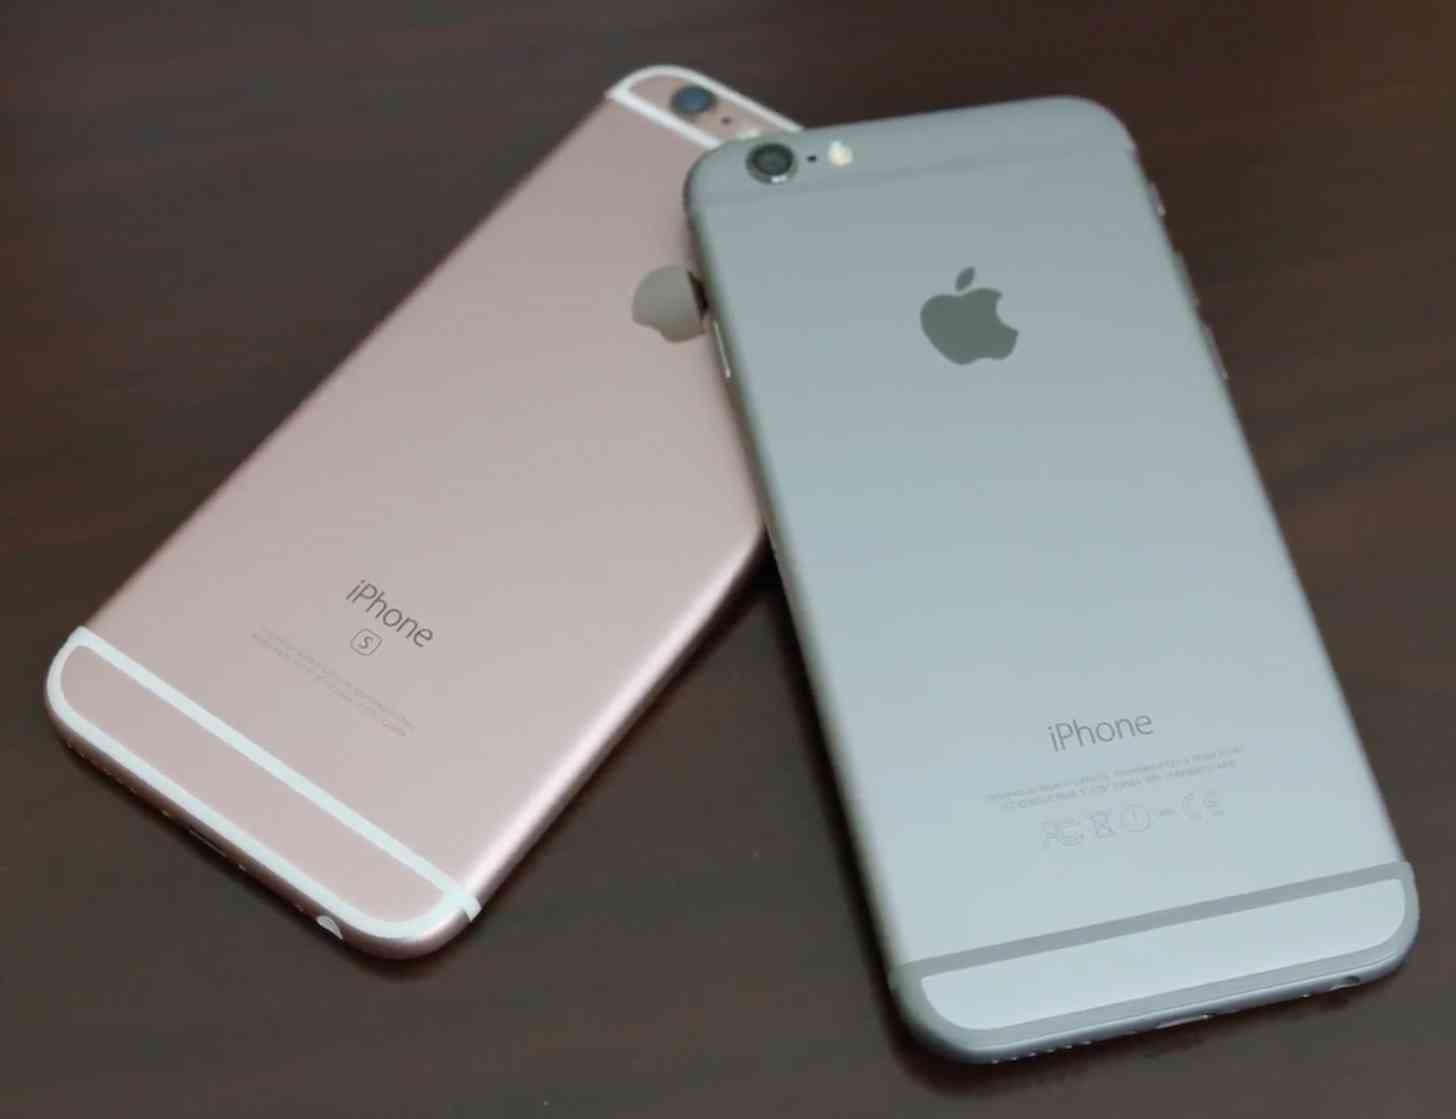 iPhone 6s, iPhone 6 pair